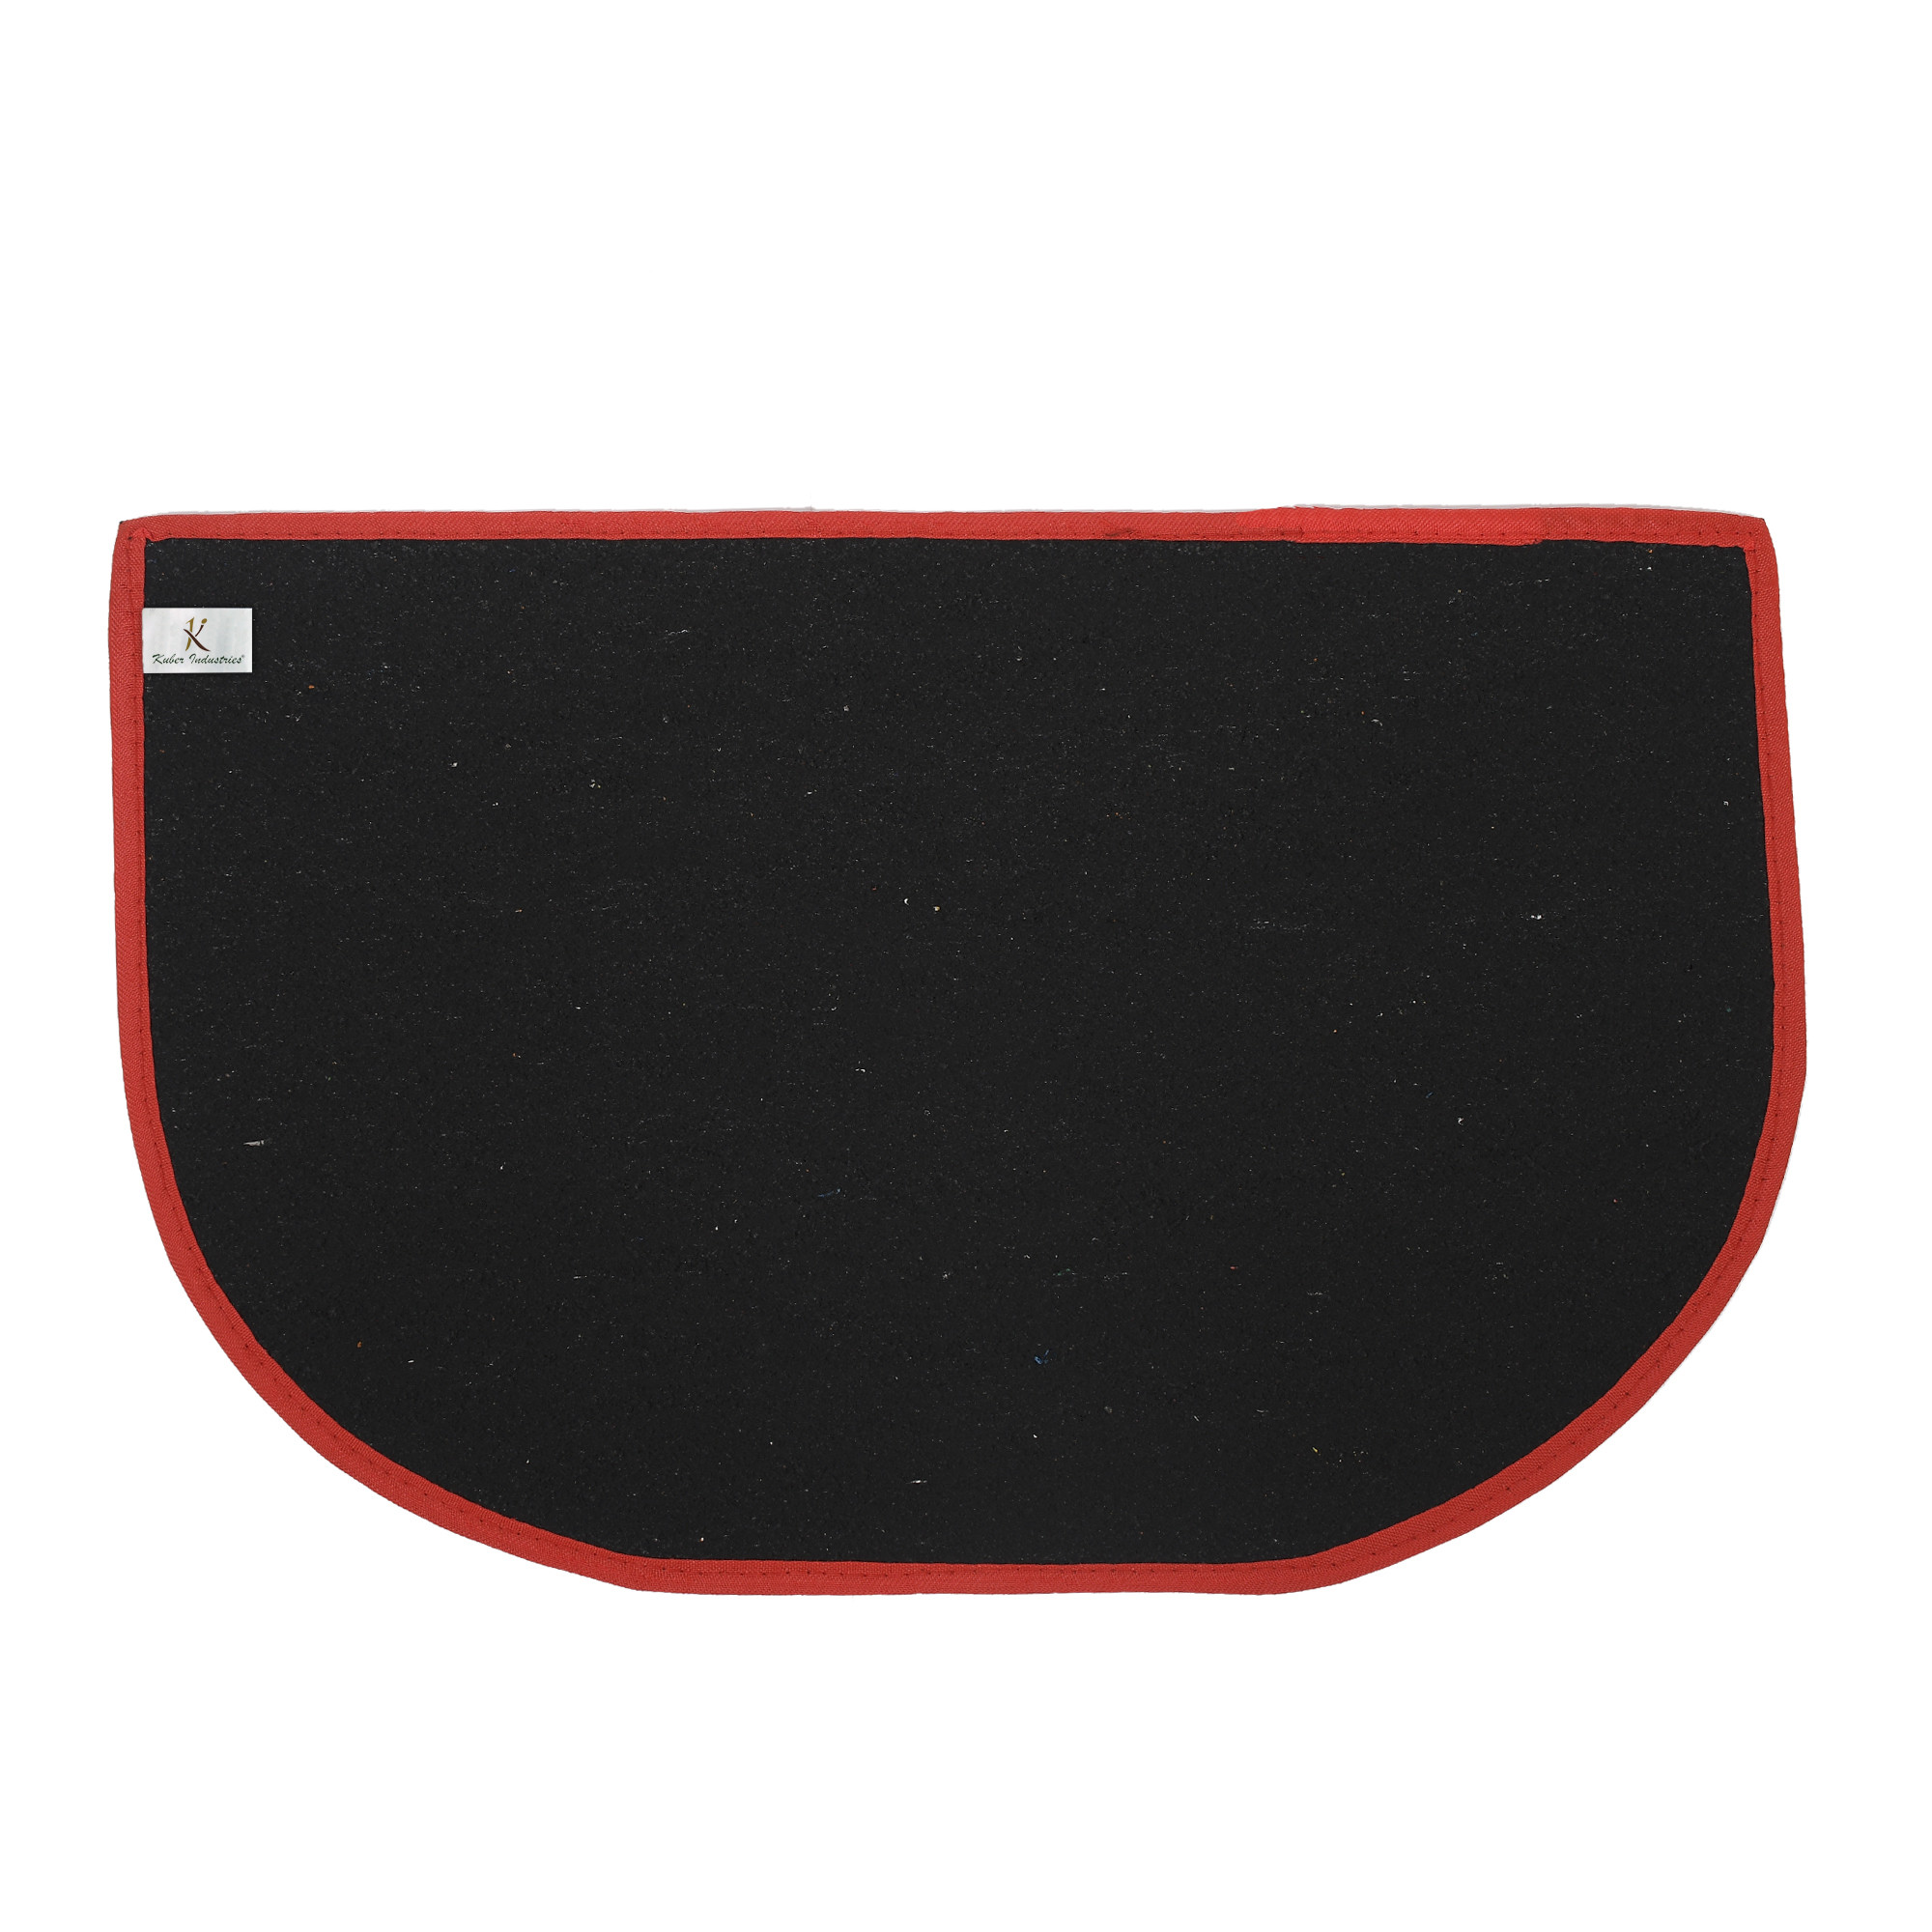 Kuber Industries D-Shape Microfiber Anti Slip 3 Pieces Door Mat (14'' x 23'',Red & Maroon & Brown)-KUBMRT12220